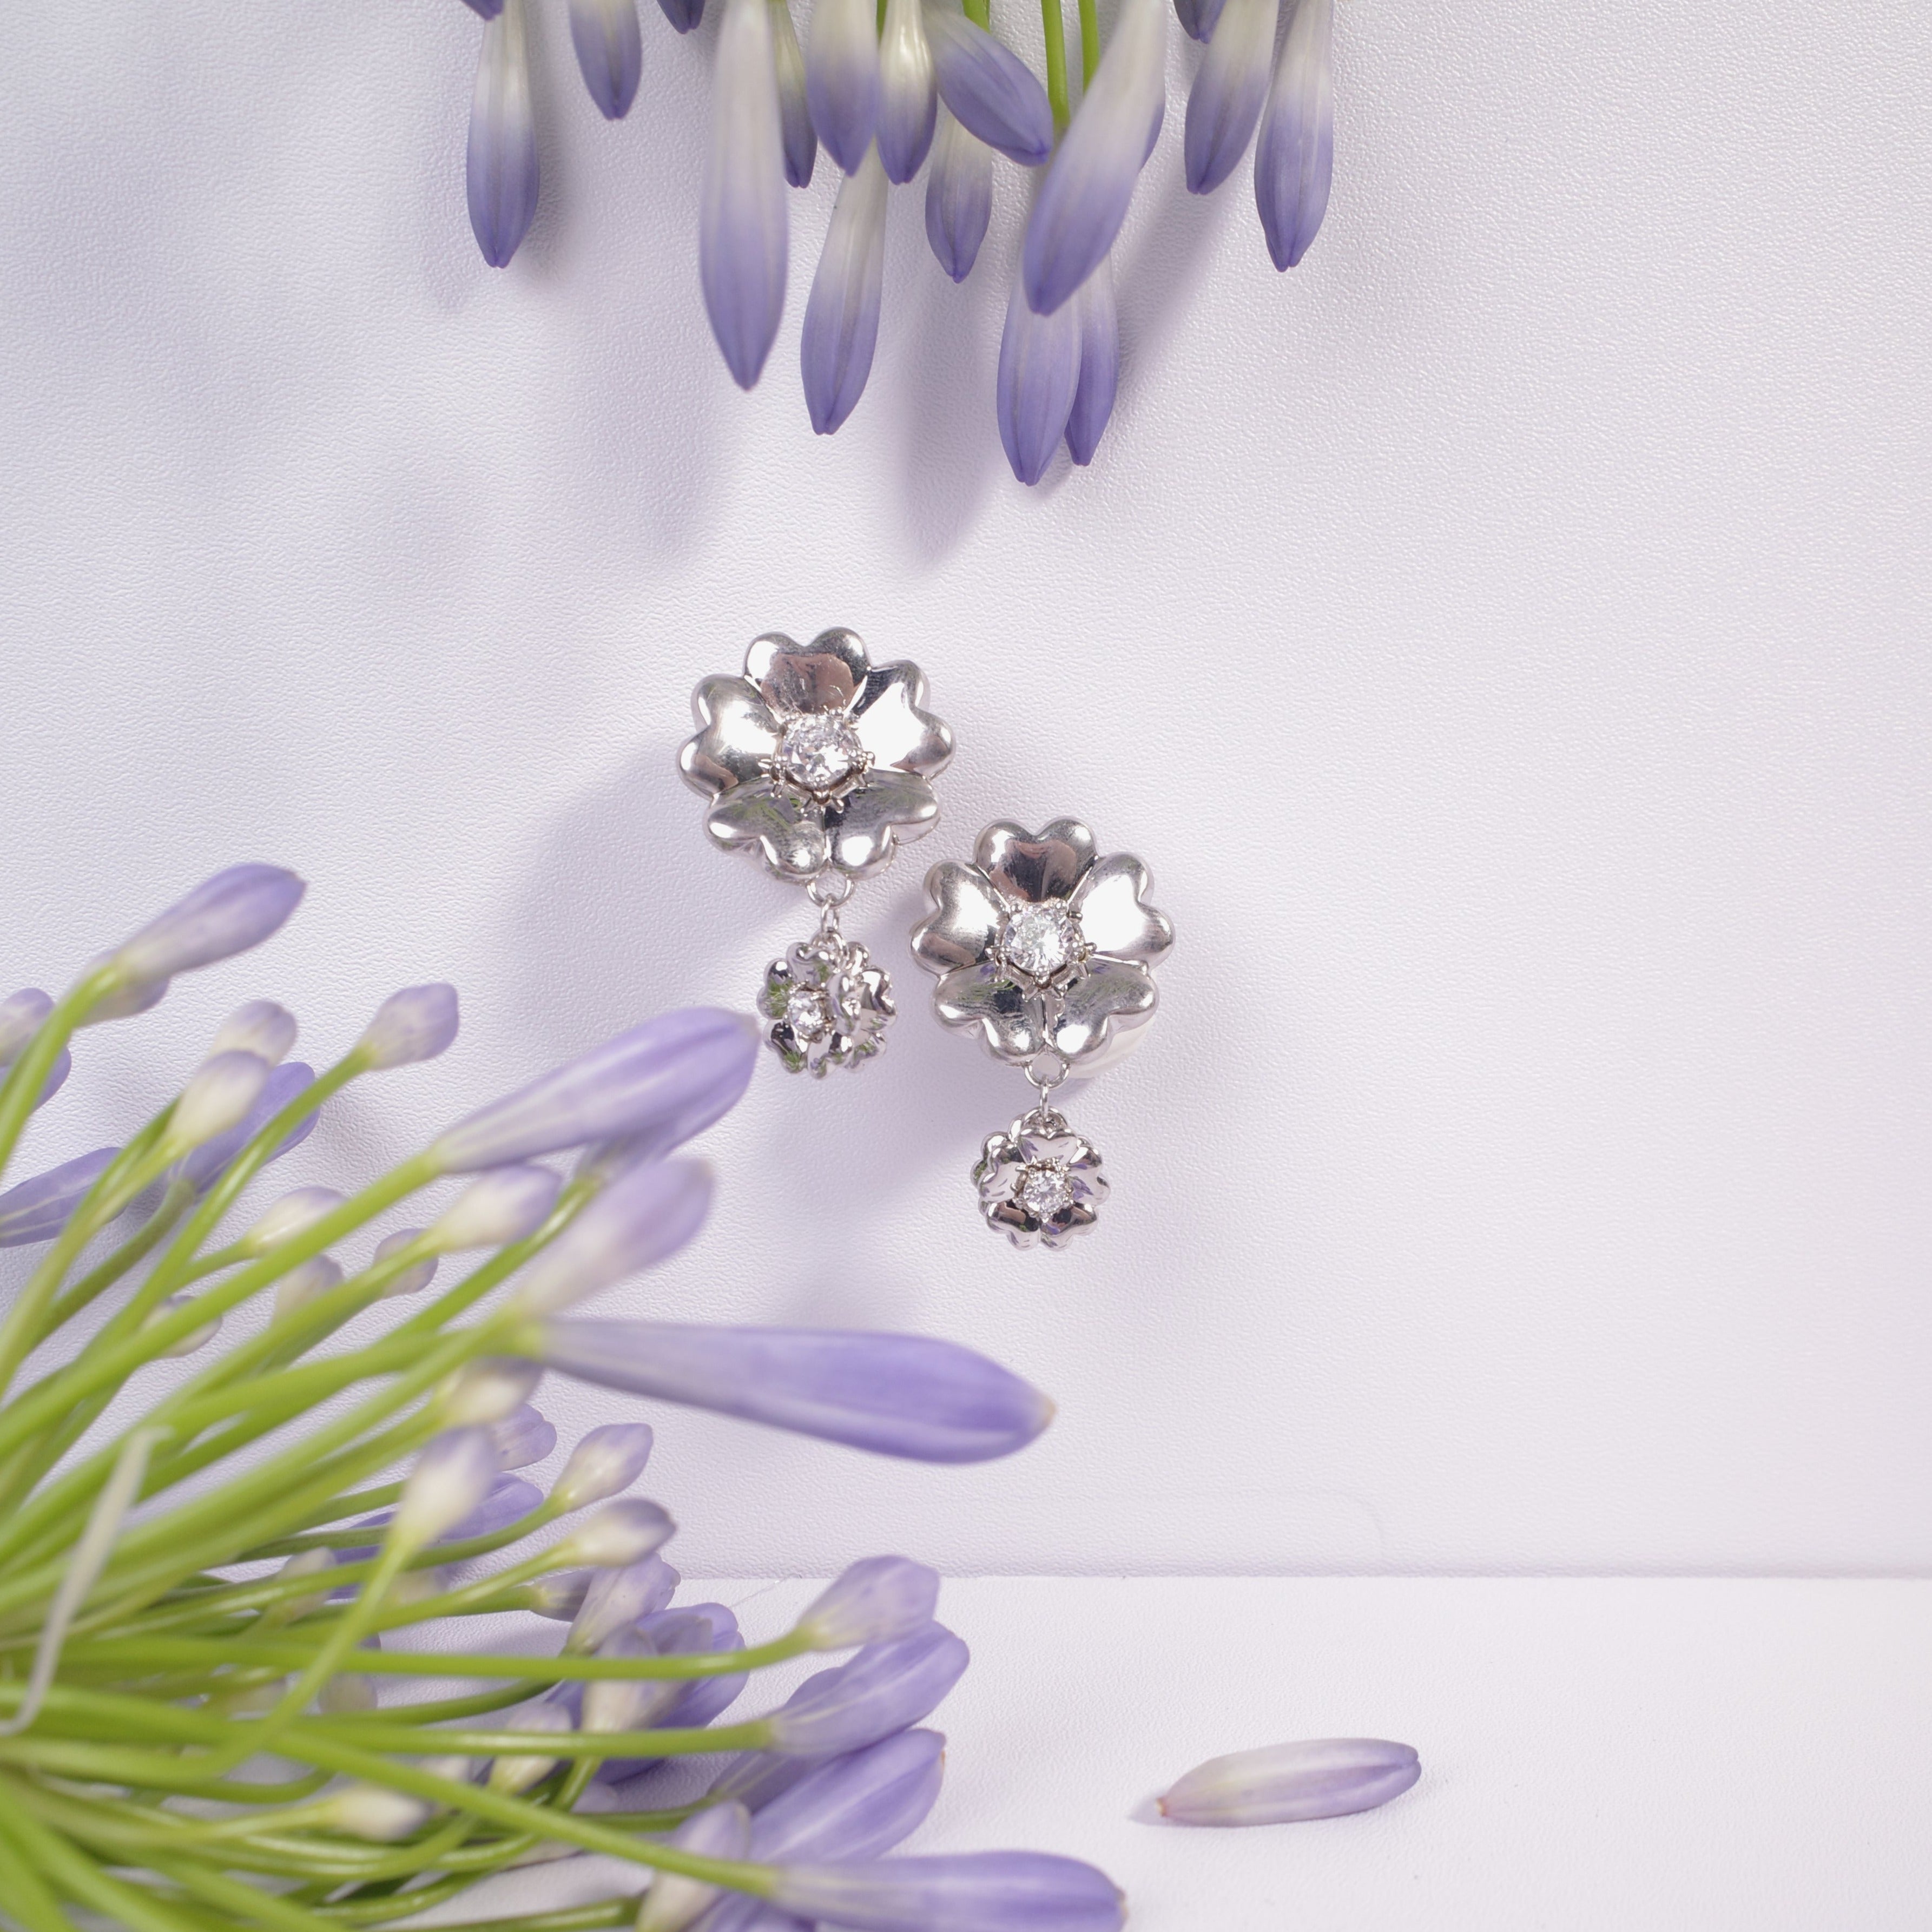 Original Design Flower/Peach Blossom High Quality 925 Silver Stud Handmade Earrings